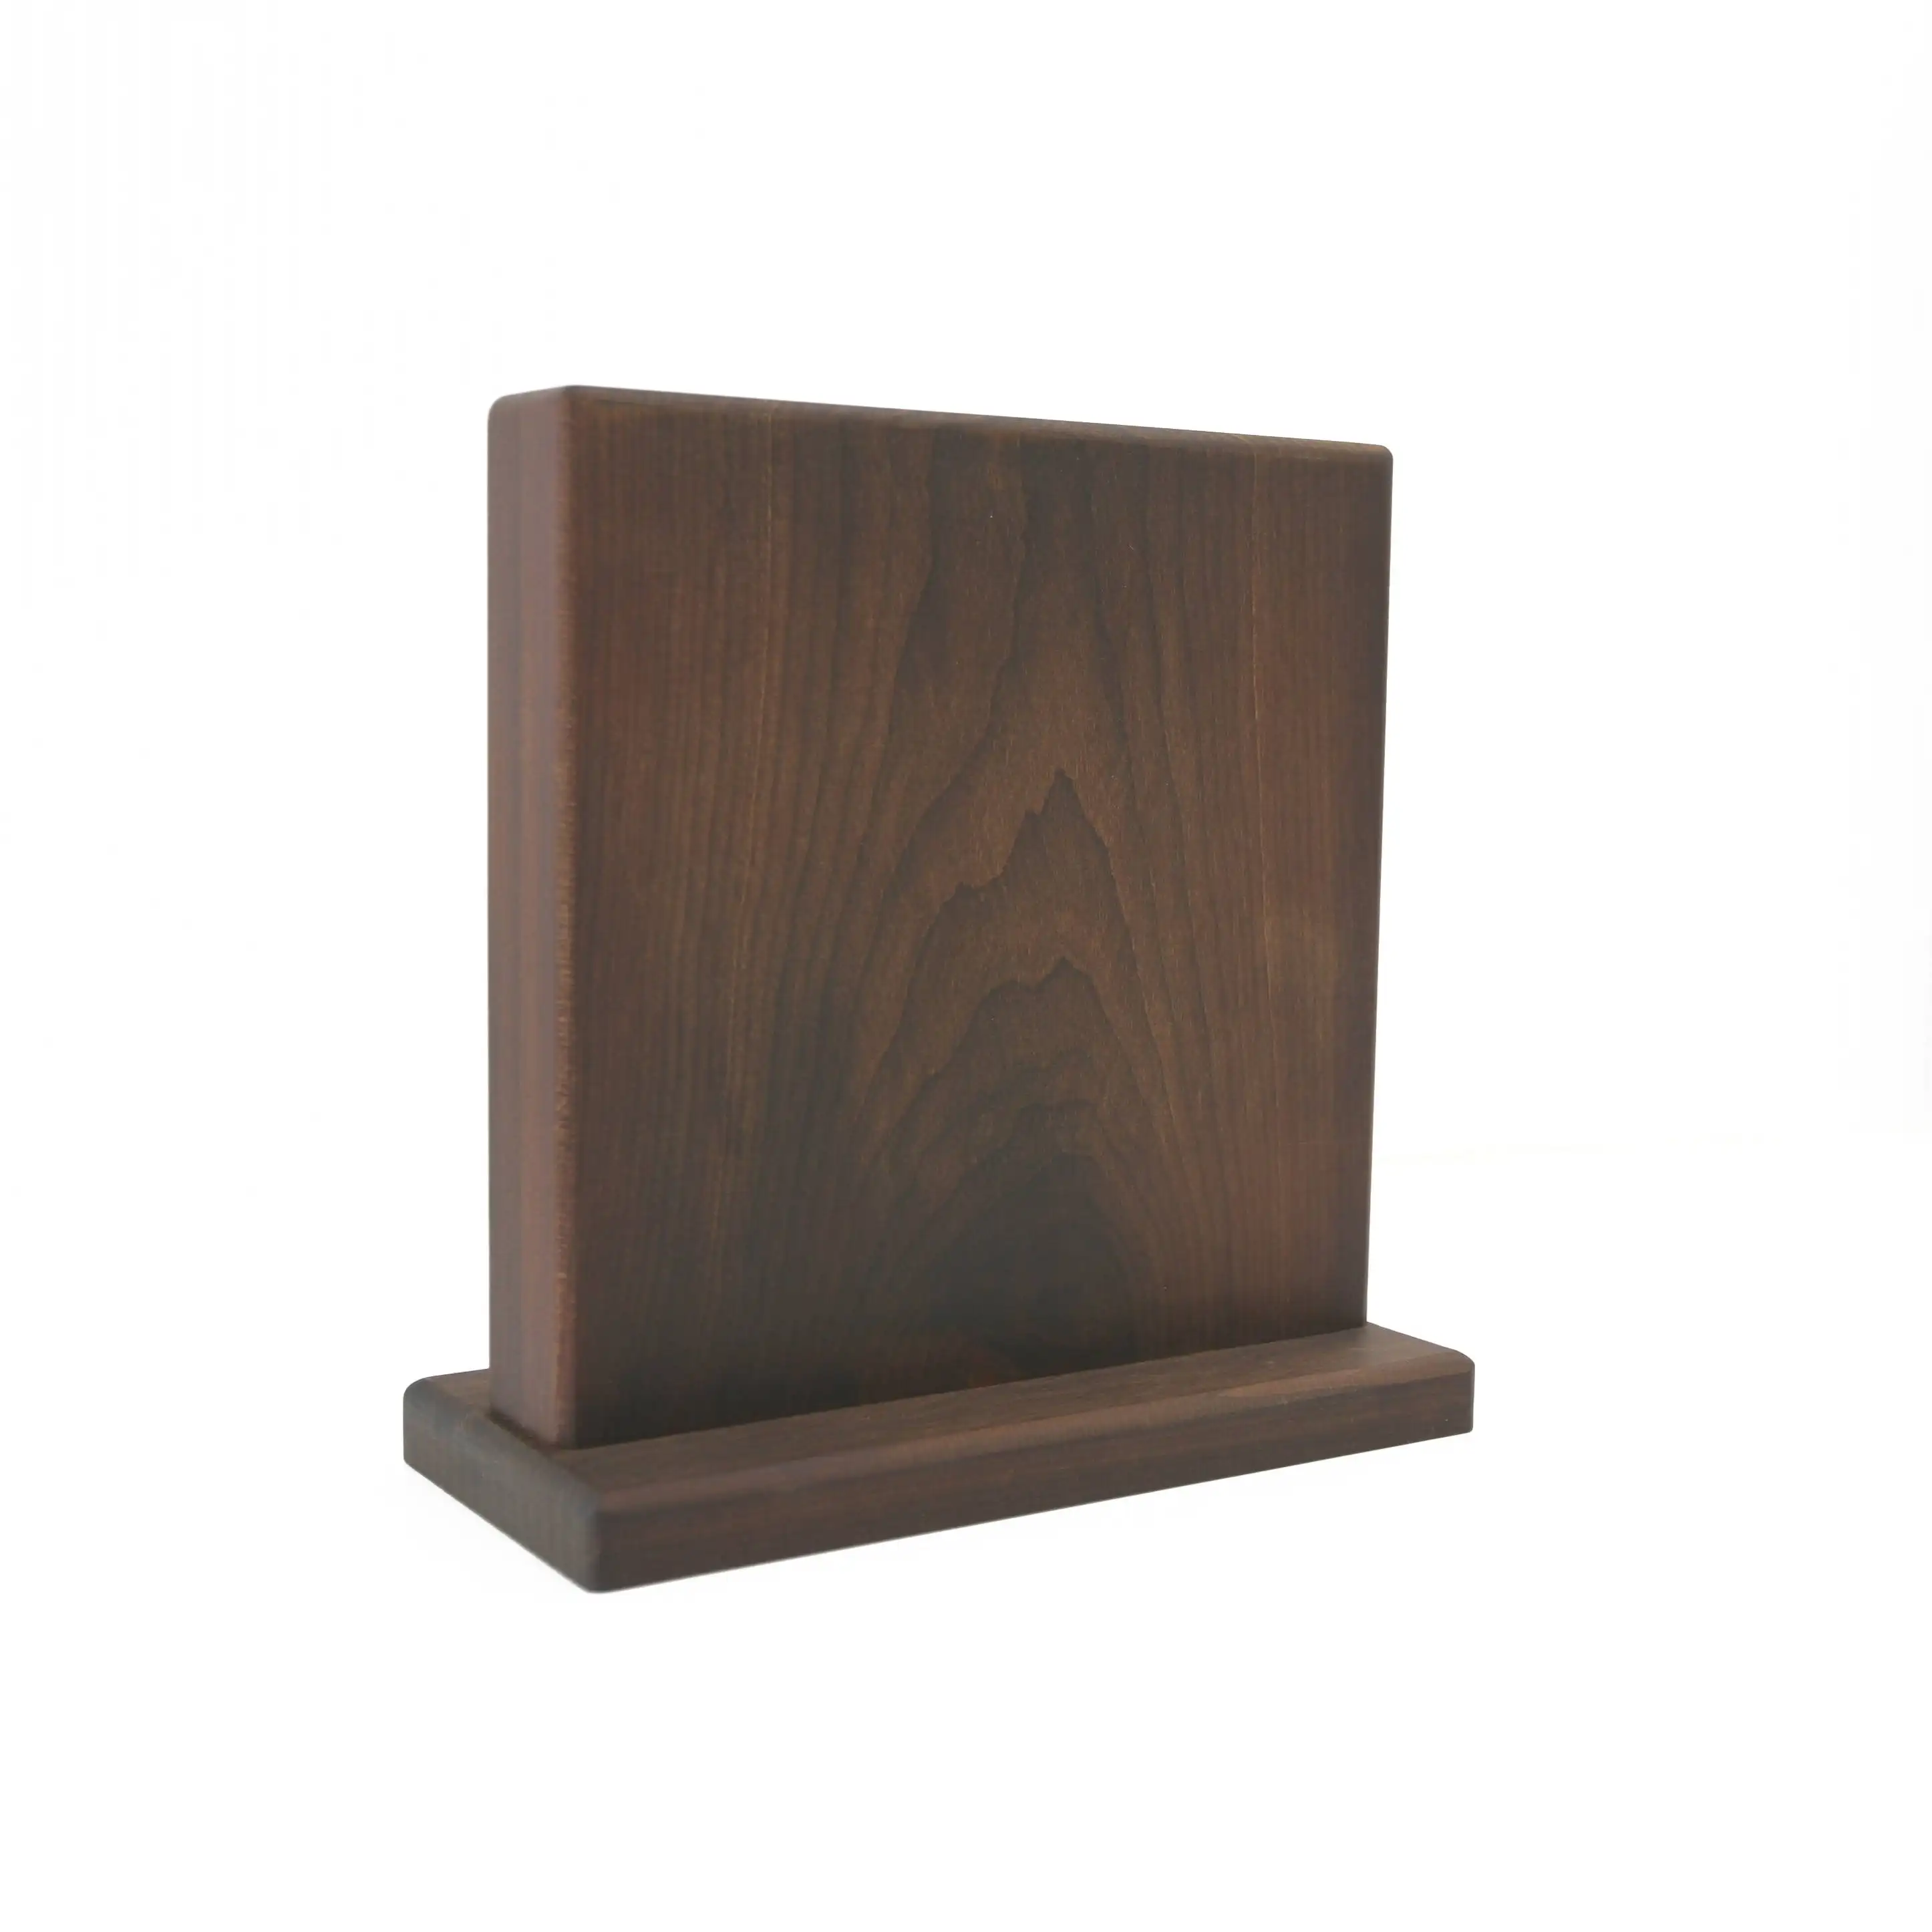 BOUMBI bellissimo ceppo portacoltelli magnetico in legno con venature del legno con potenti magneti espositore per posate a doppio lato